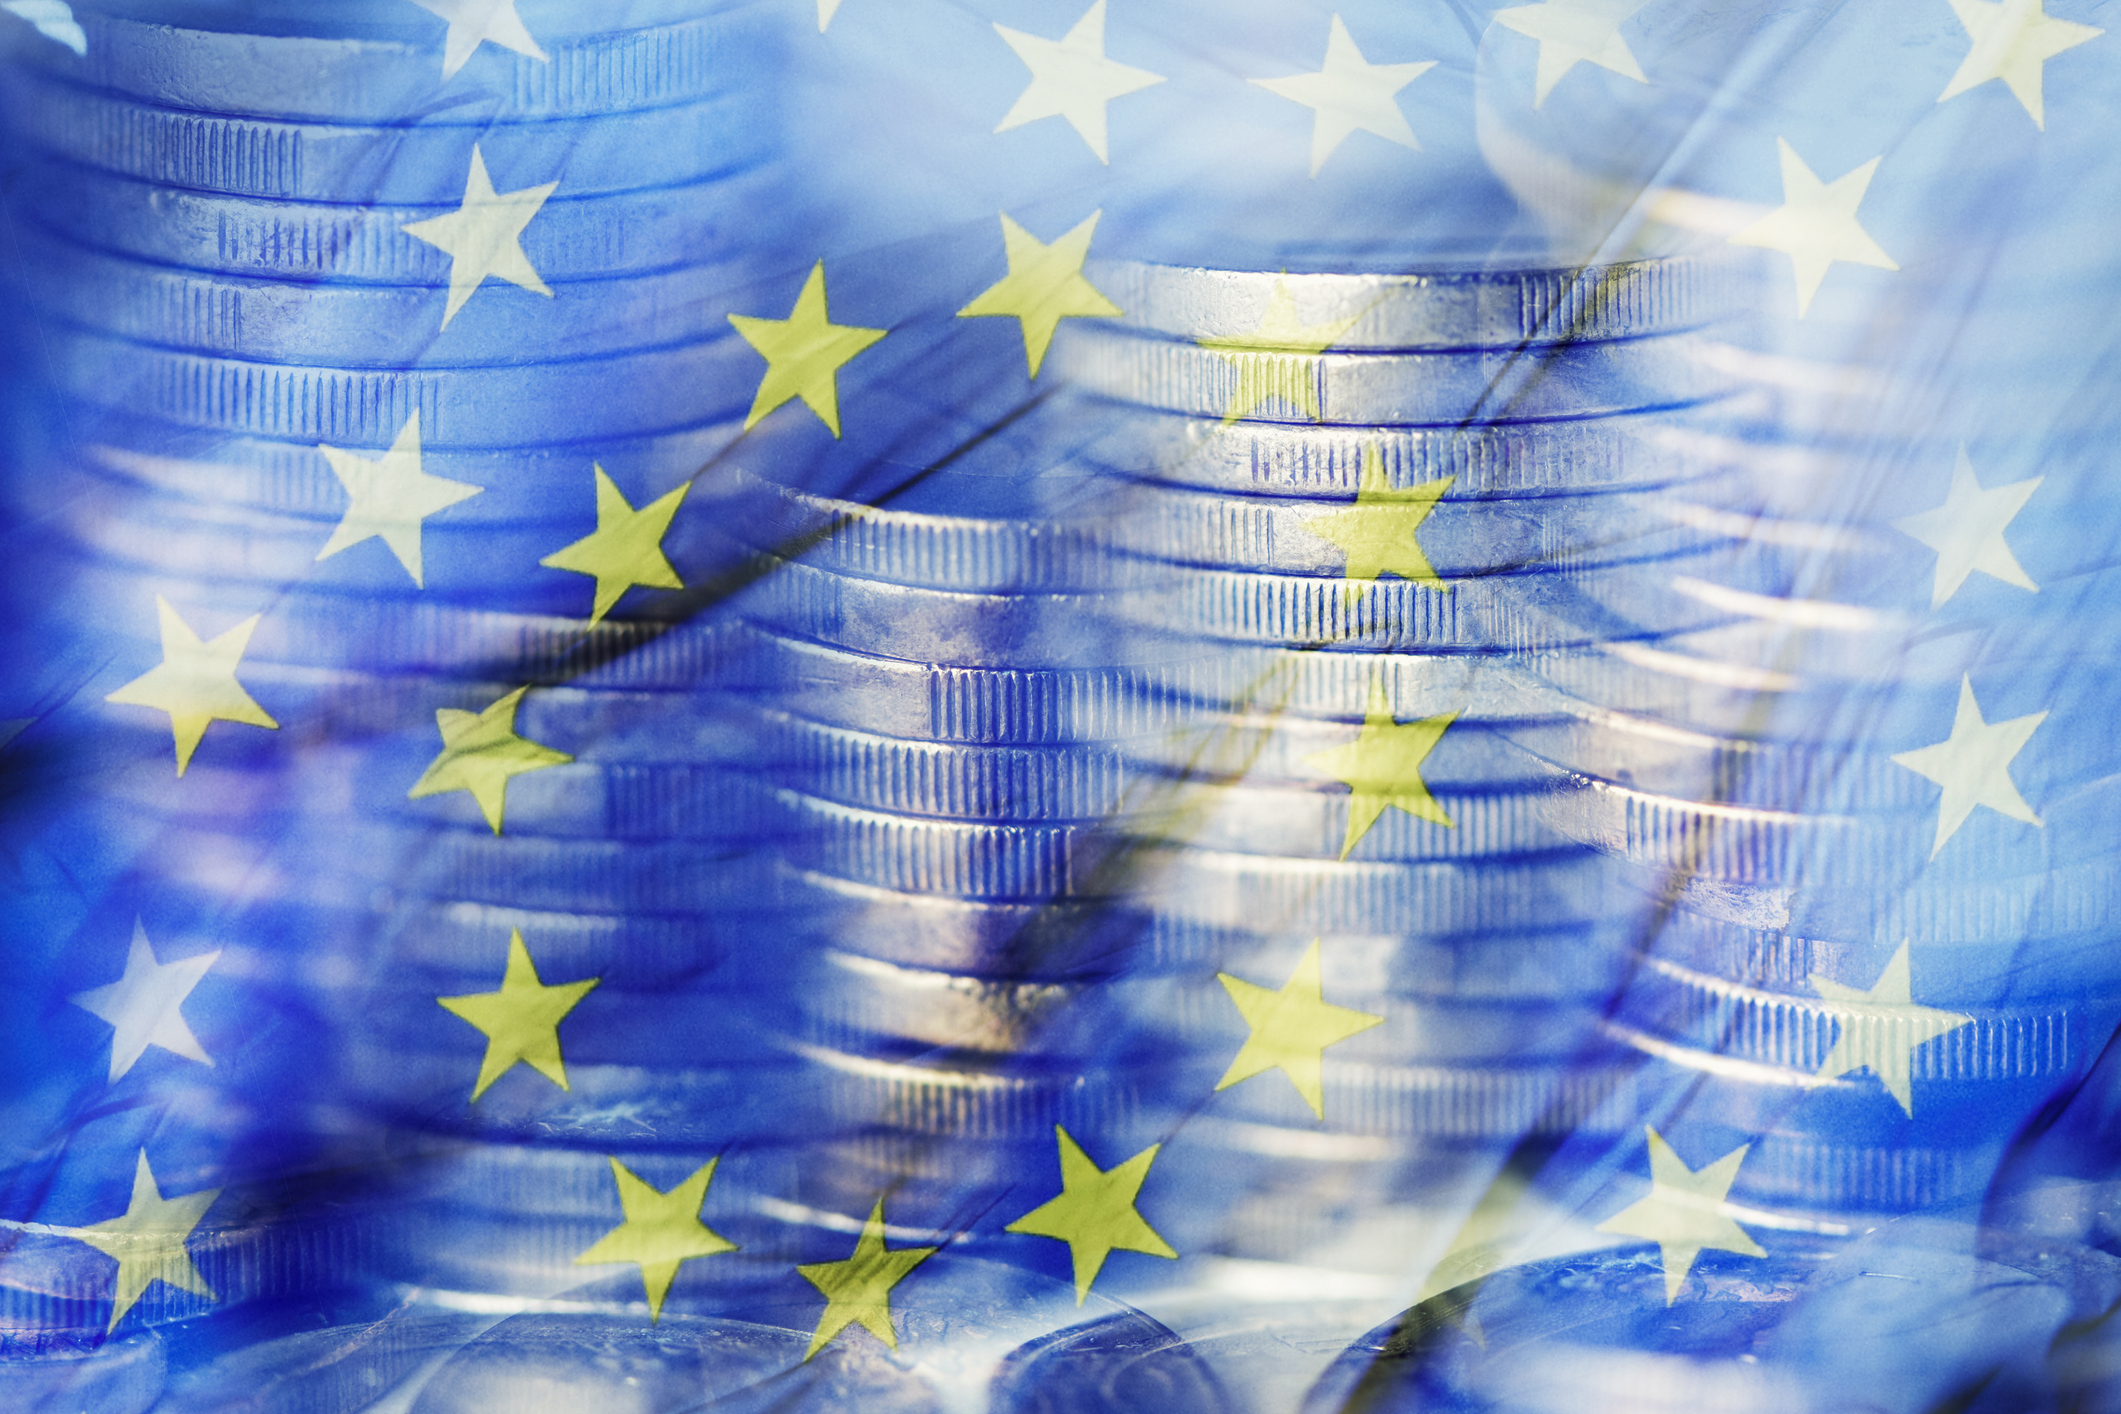 Imagen difuminada con monedas apiladas y la bandera de la Comunidad Europea